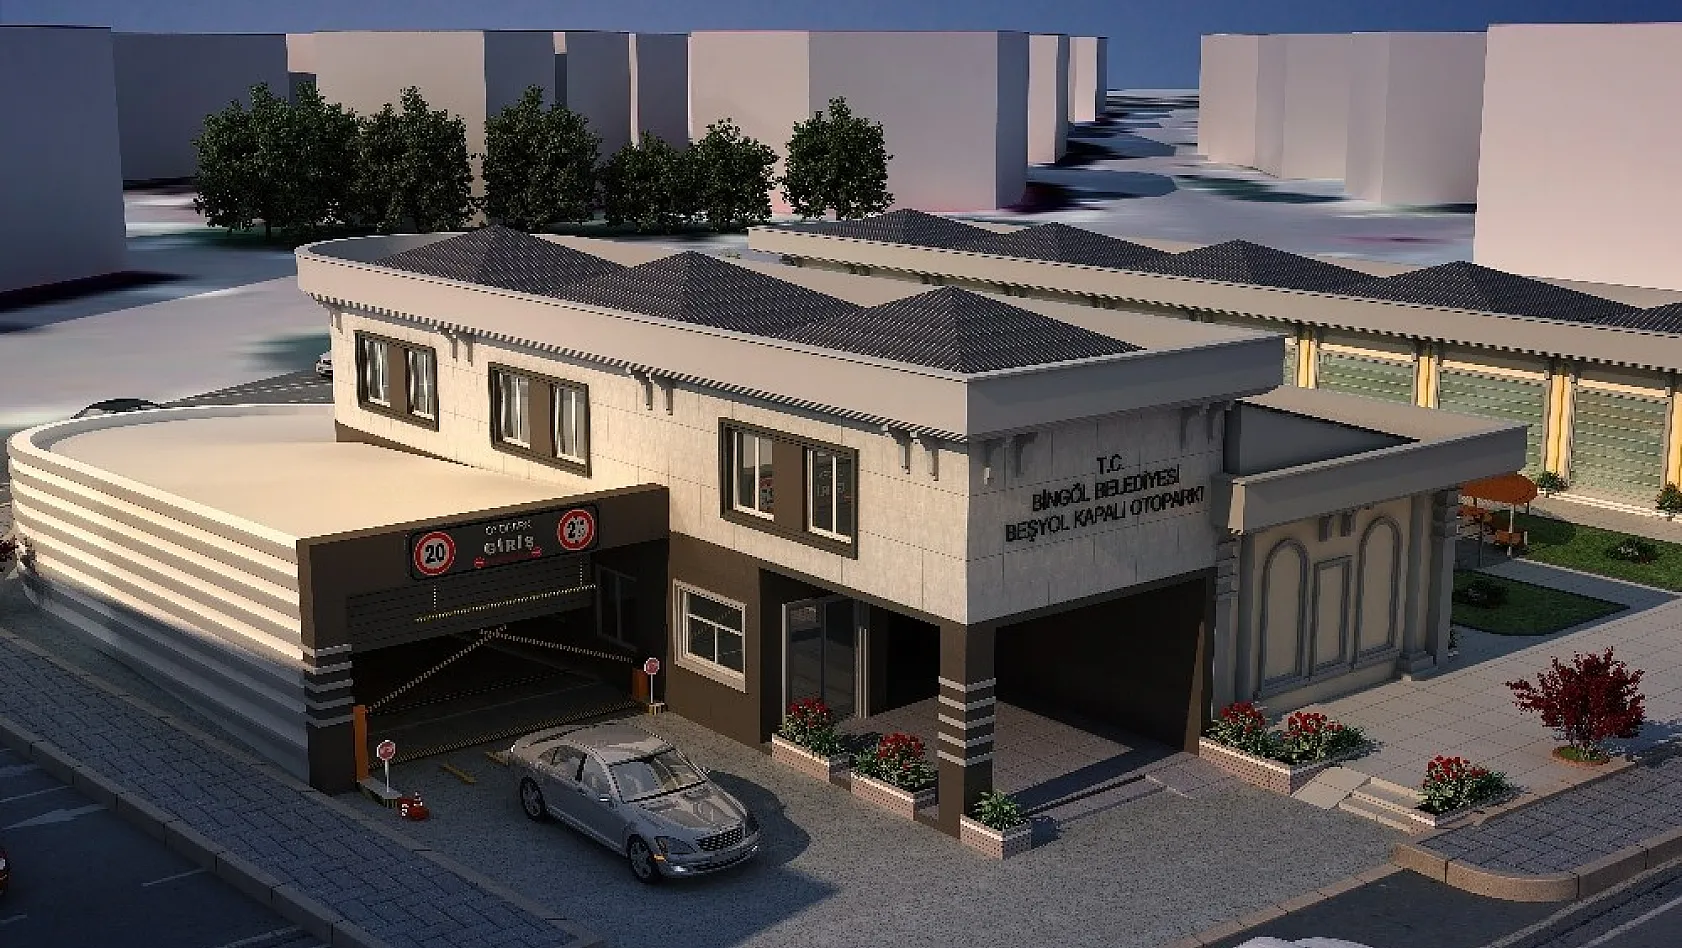 Bingöl Belediyesi, 3 katlı kapalı otopark ve yeni ticari alan inşa edecek 